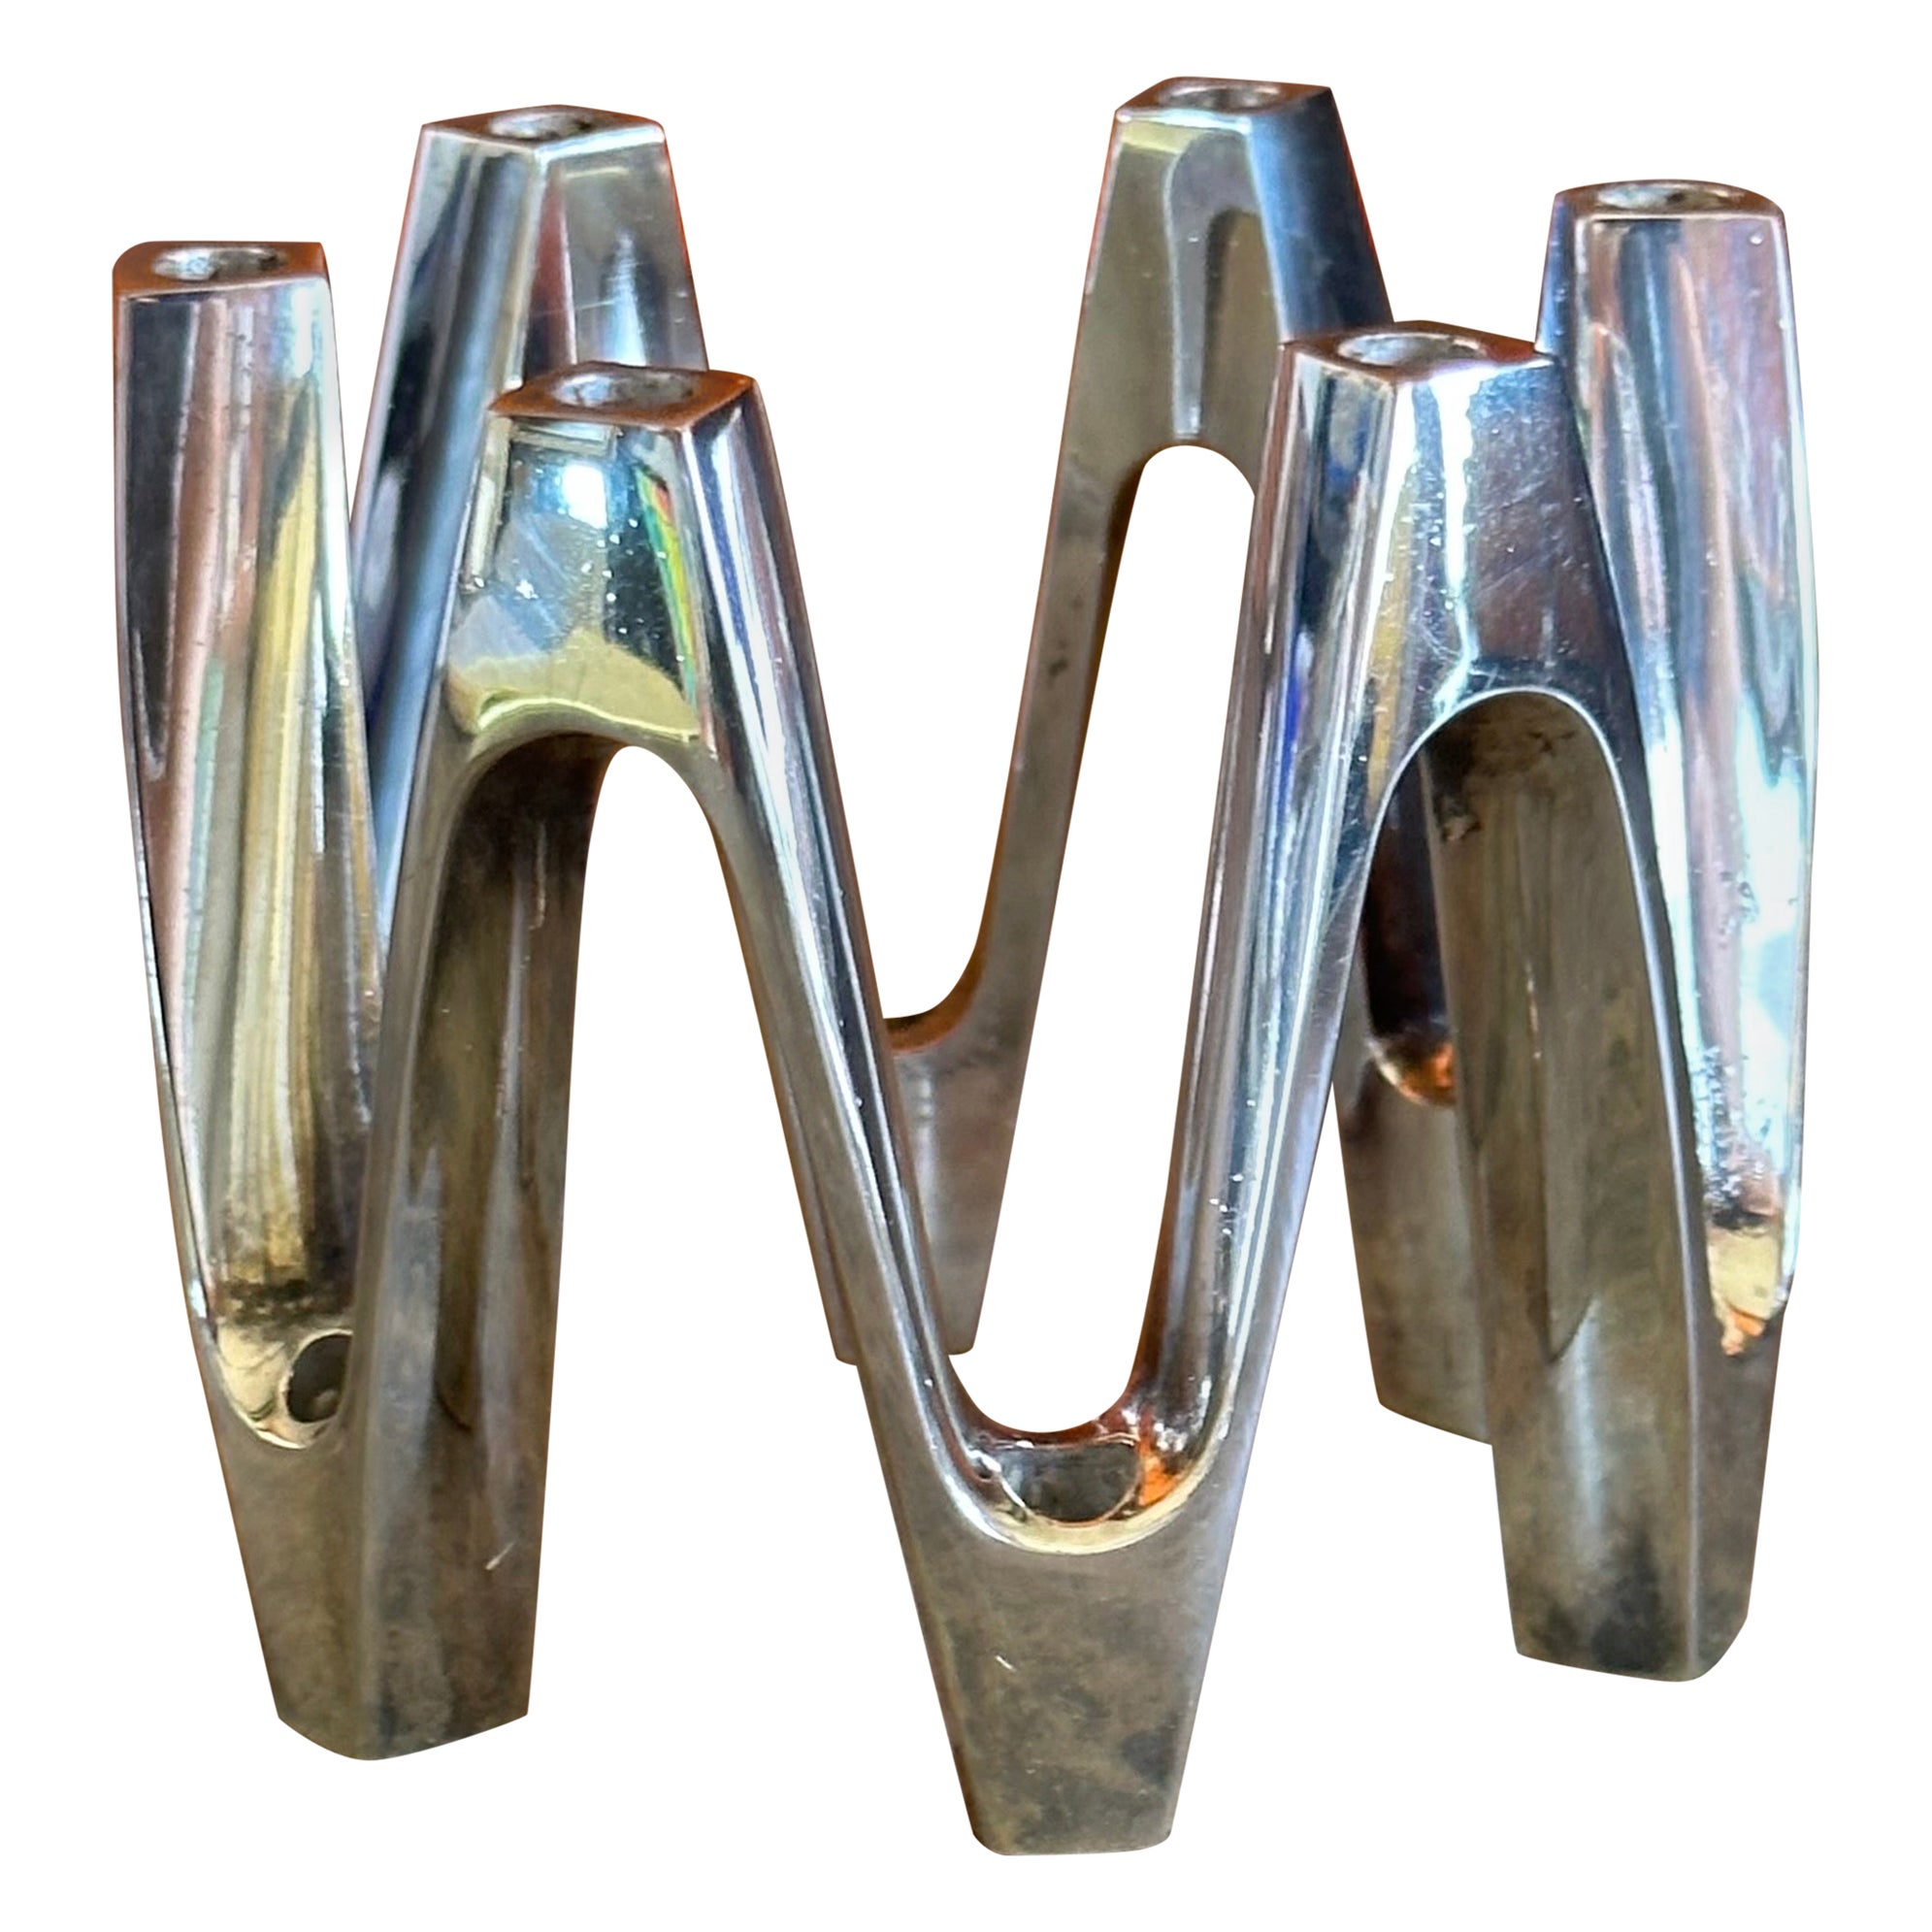 Porte-bougies sculptural en métal argenté de Jens Quistgaard pour Dansk